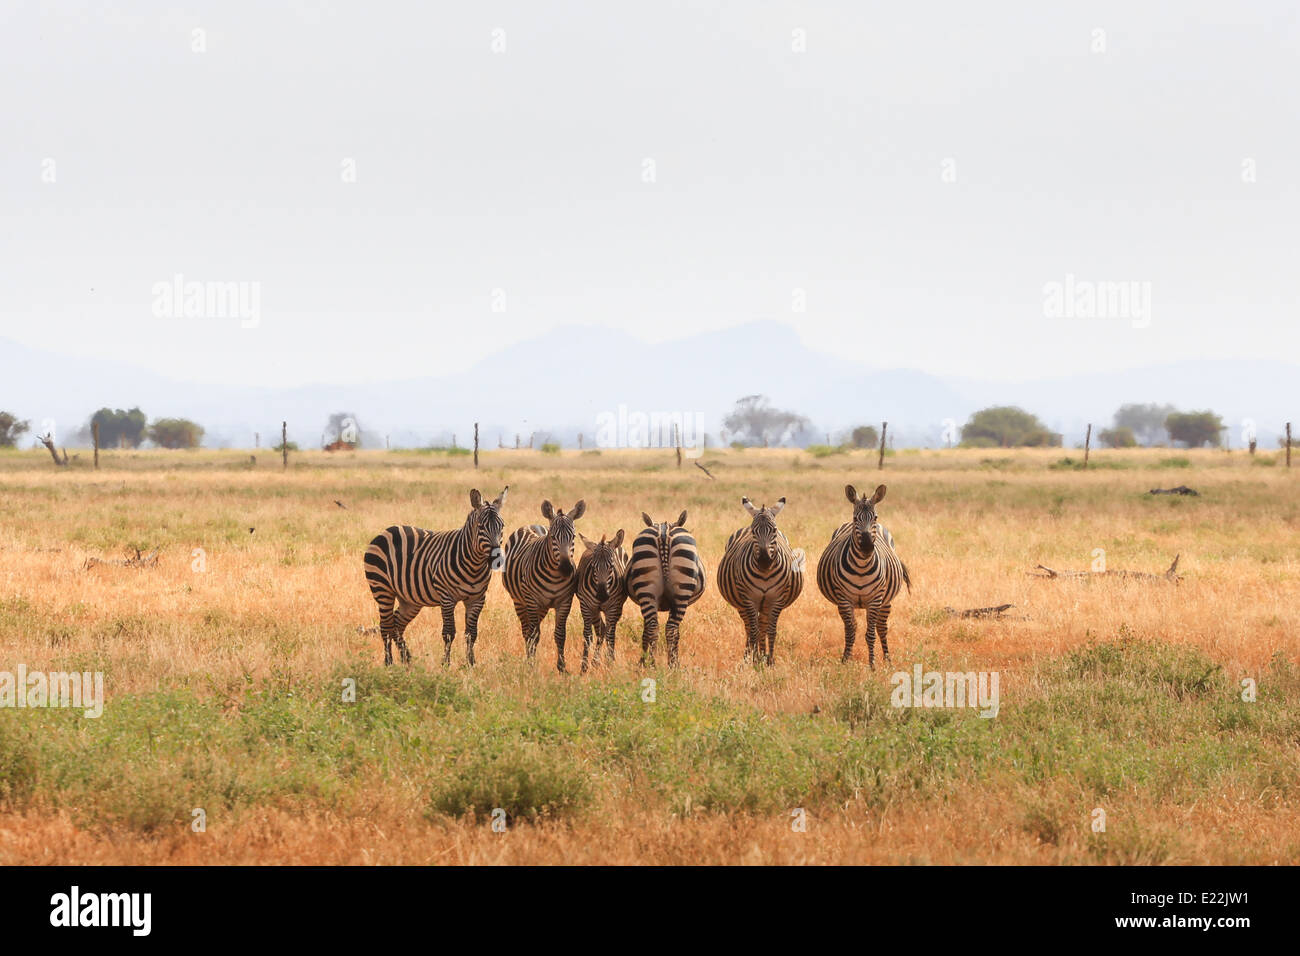 Sei zebre in piedi insieme mentre cercando in entrambe le direzioni al Parco Nazionale Tsavo Est, a nord-ovest di Mombasa, in Kenya, Africa. Foto Stock